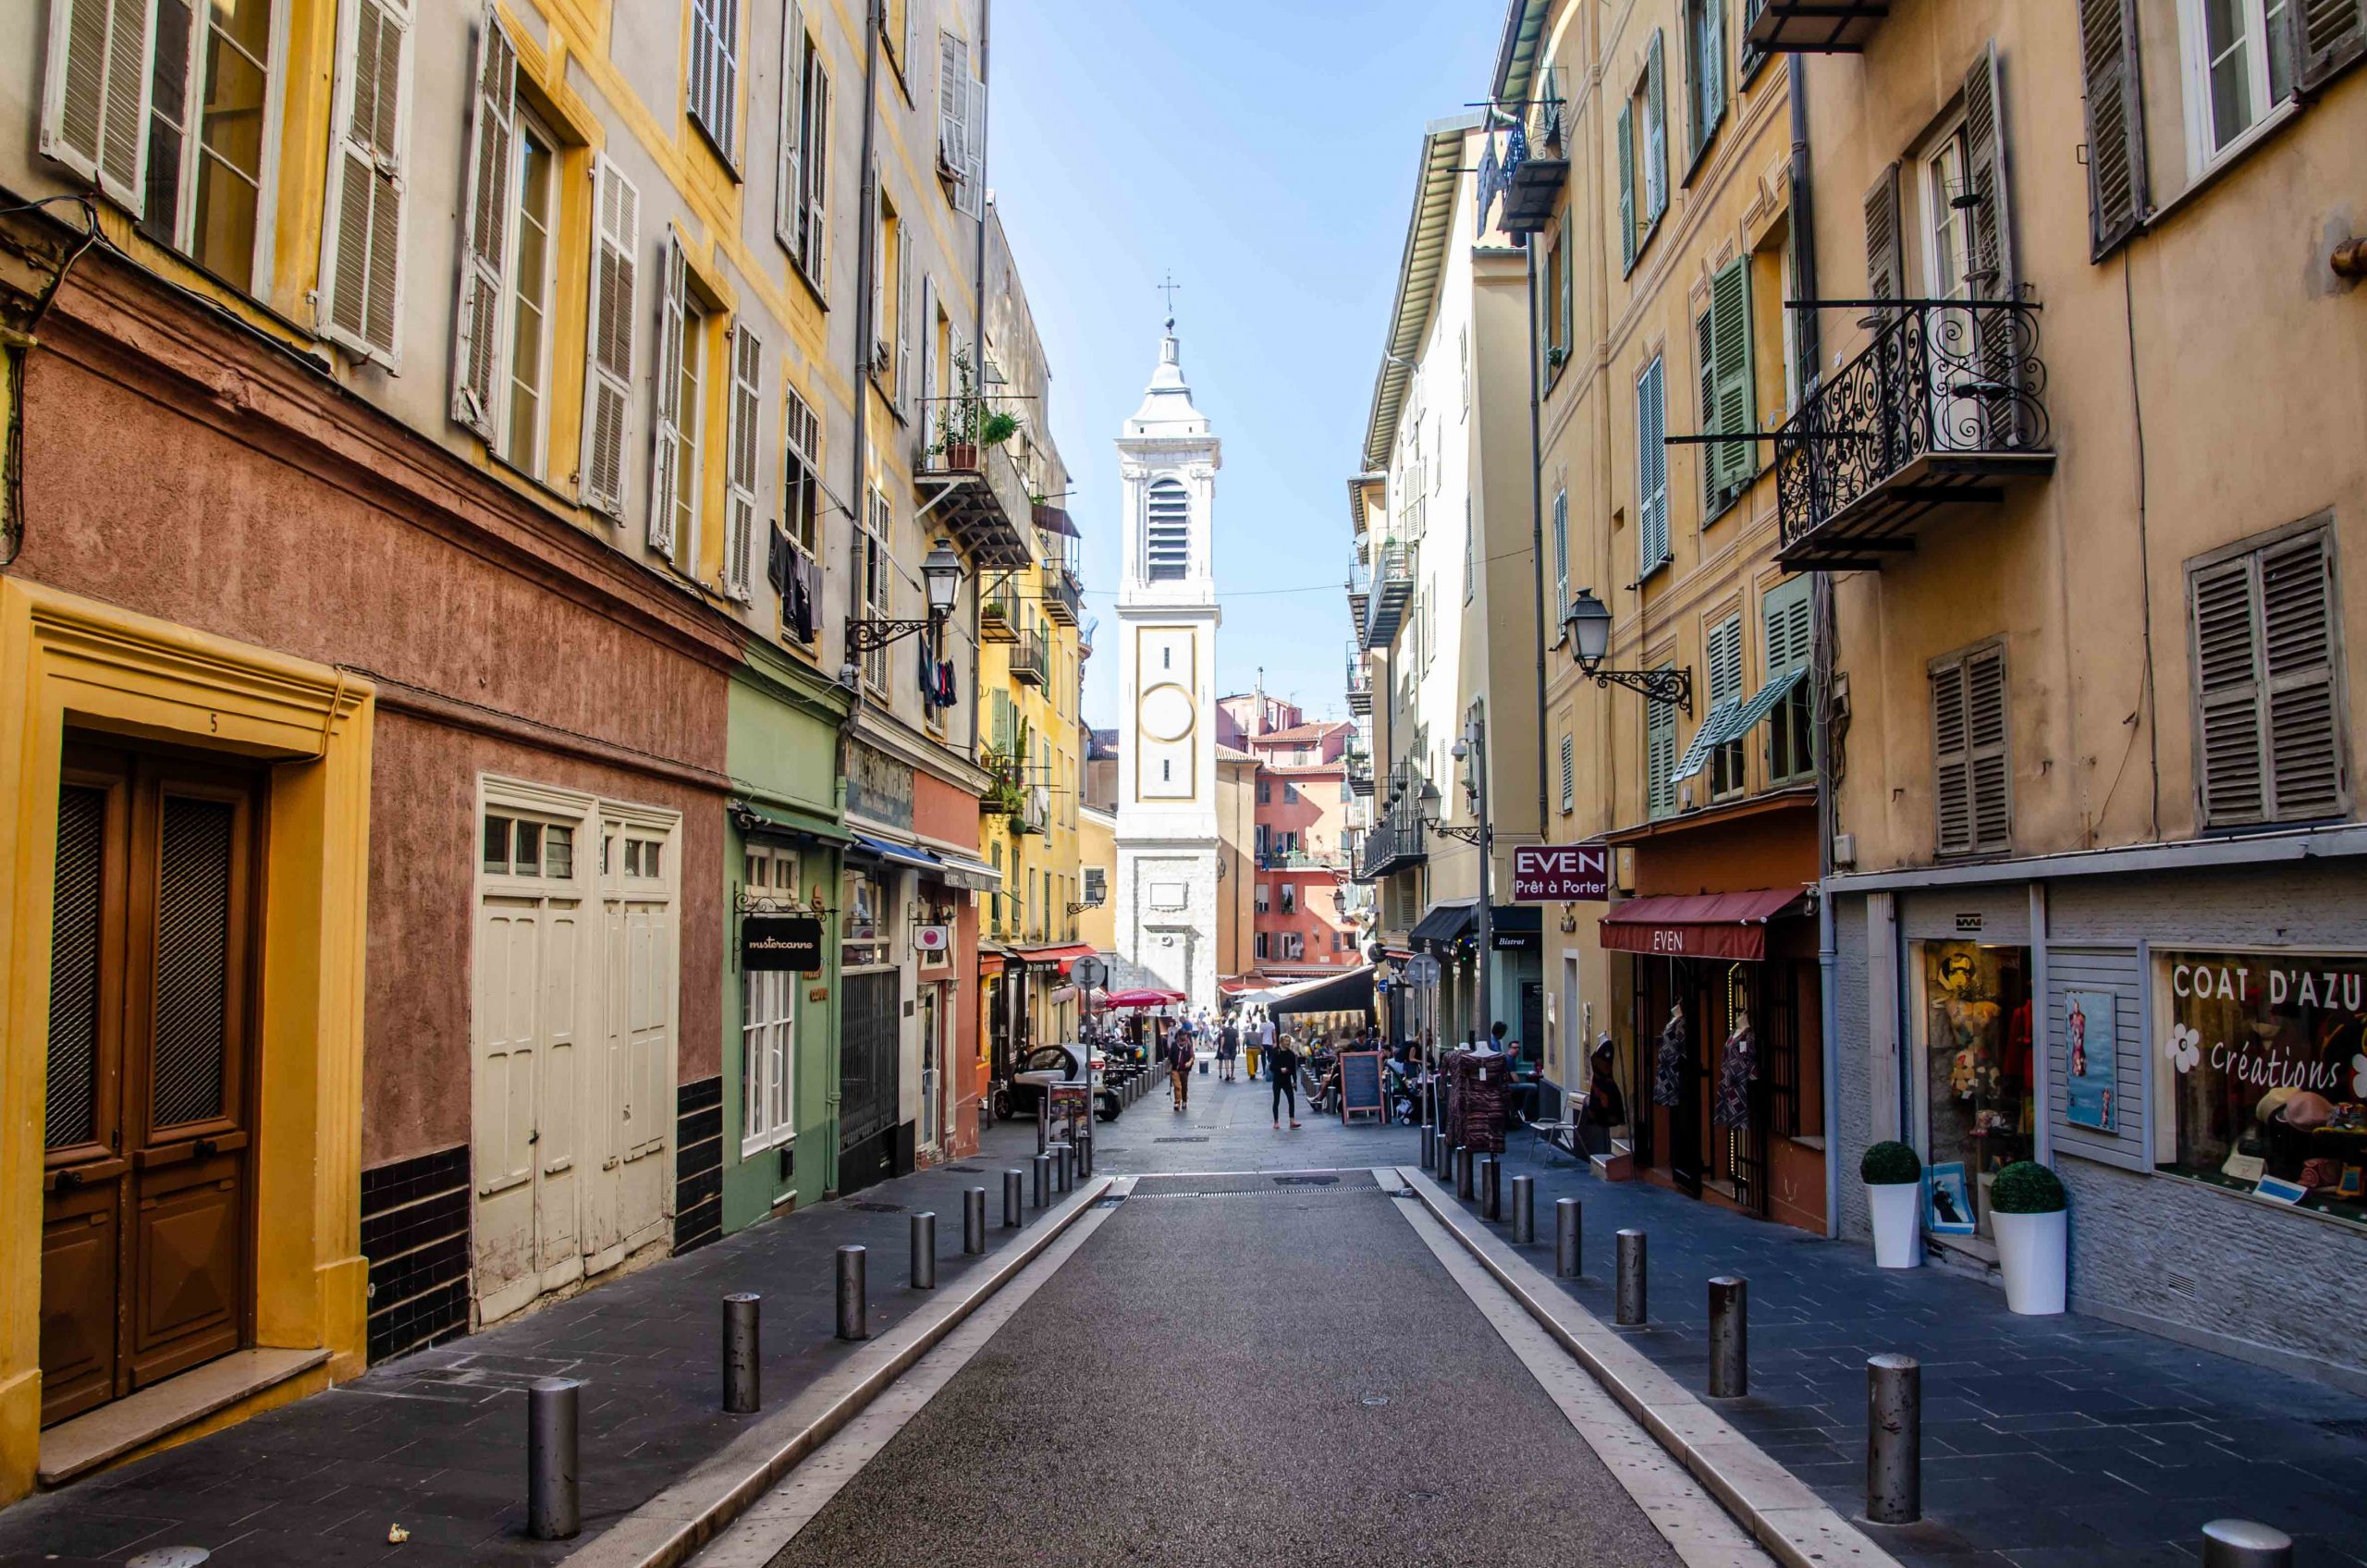 Visiter le vieux Nice : rue du quartier du vieux nice